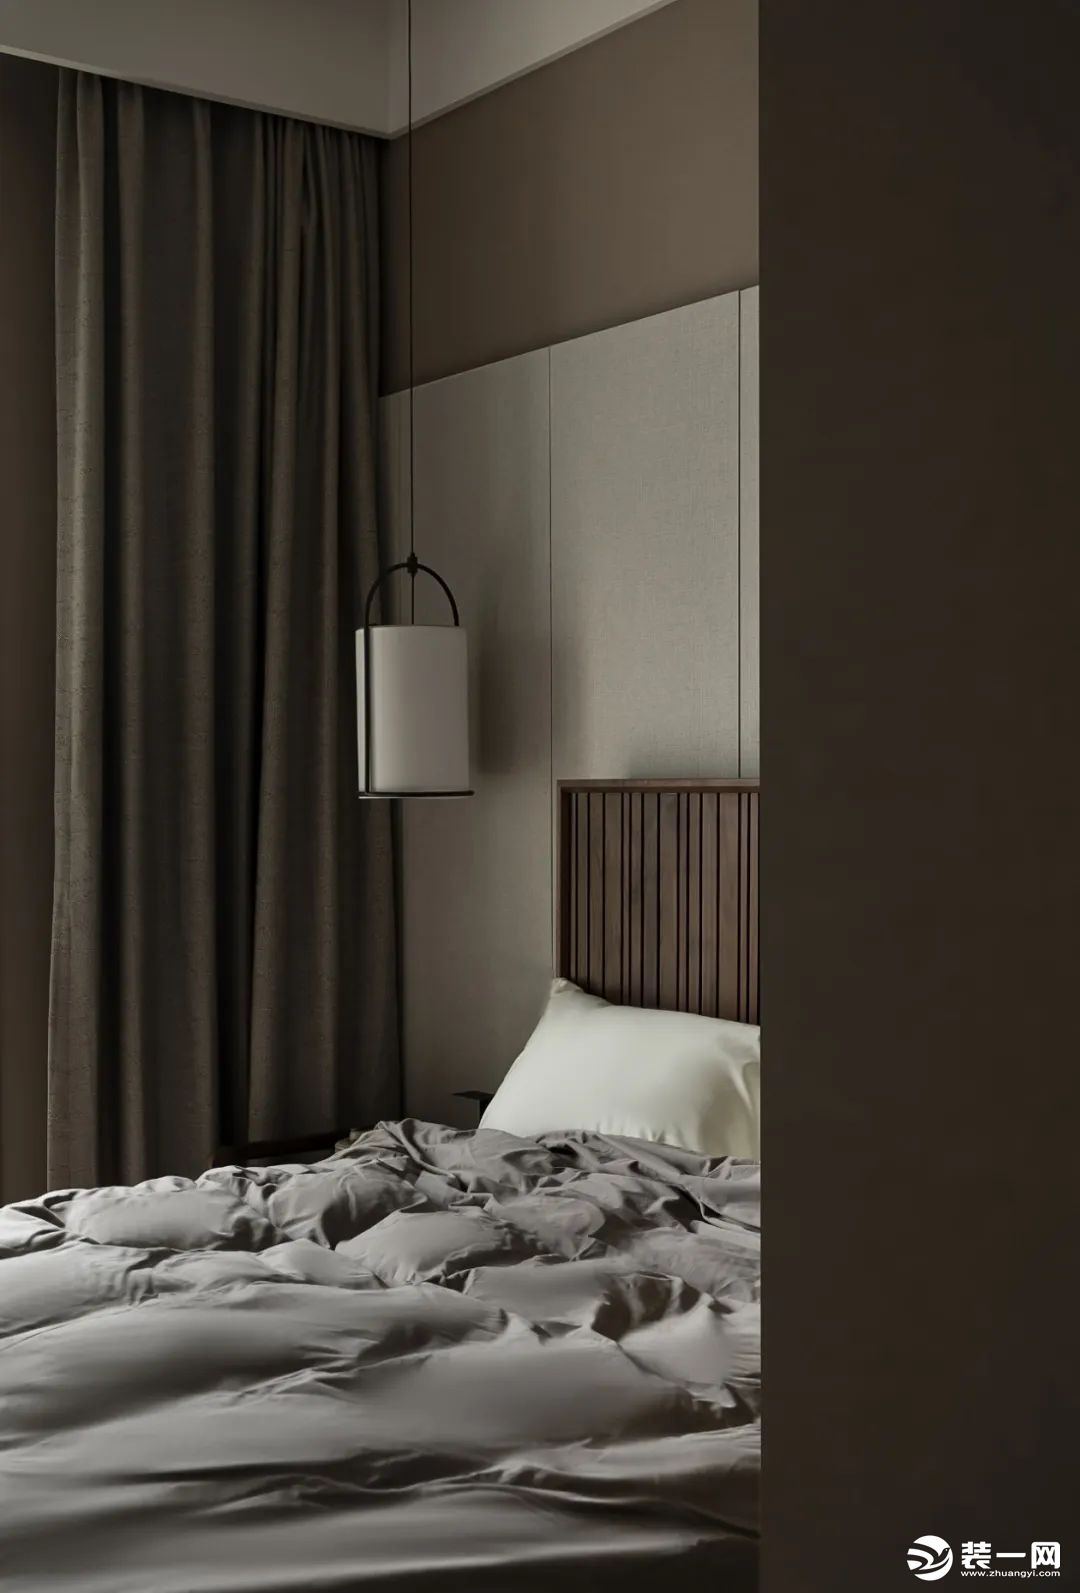 延续整体的温暖色调，以新中式的床具让空间更显沉稳，精致细腻的设计风格将简约优雅的氛围渲染。